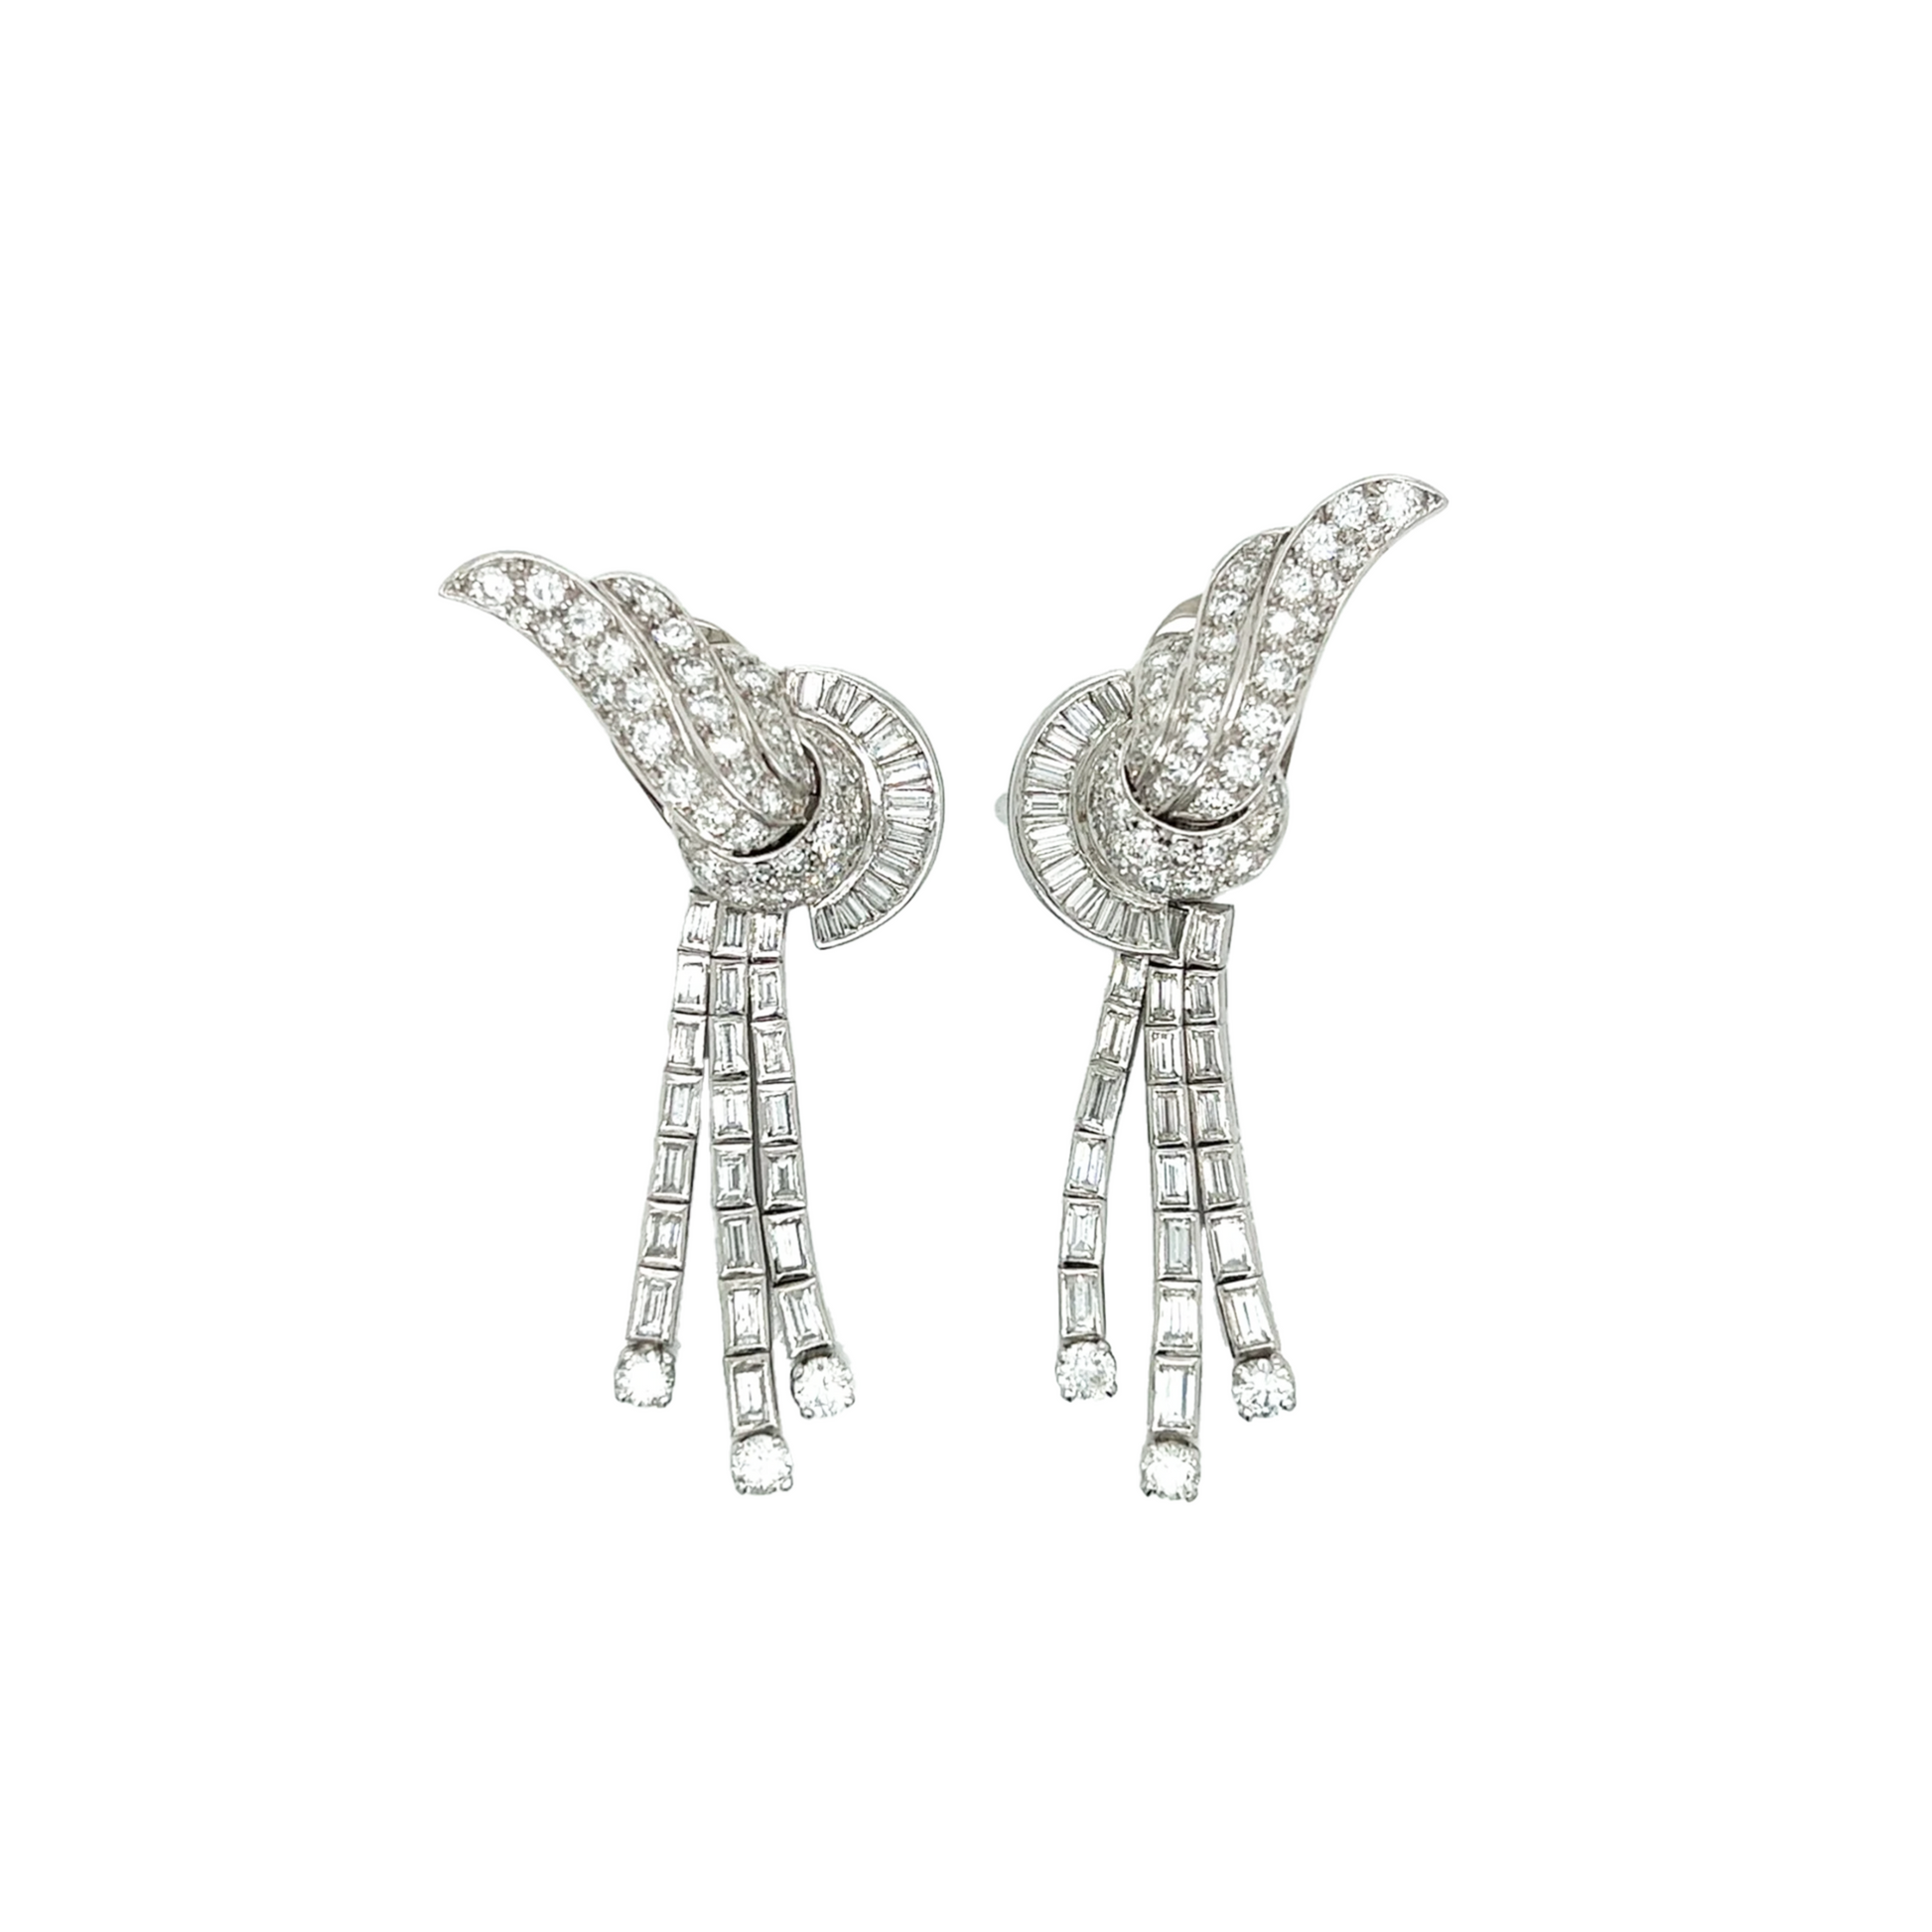 1950s Platinum Diamond Earrings front